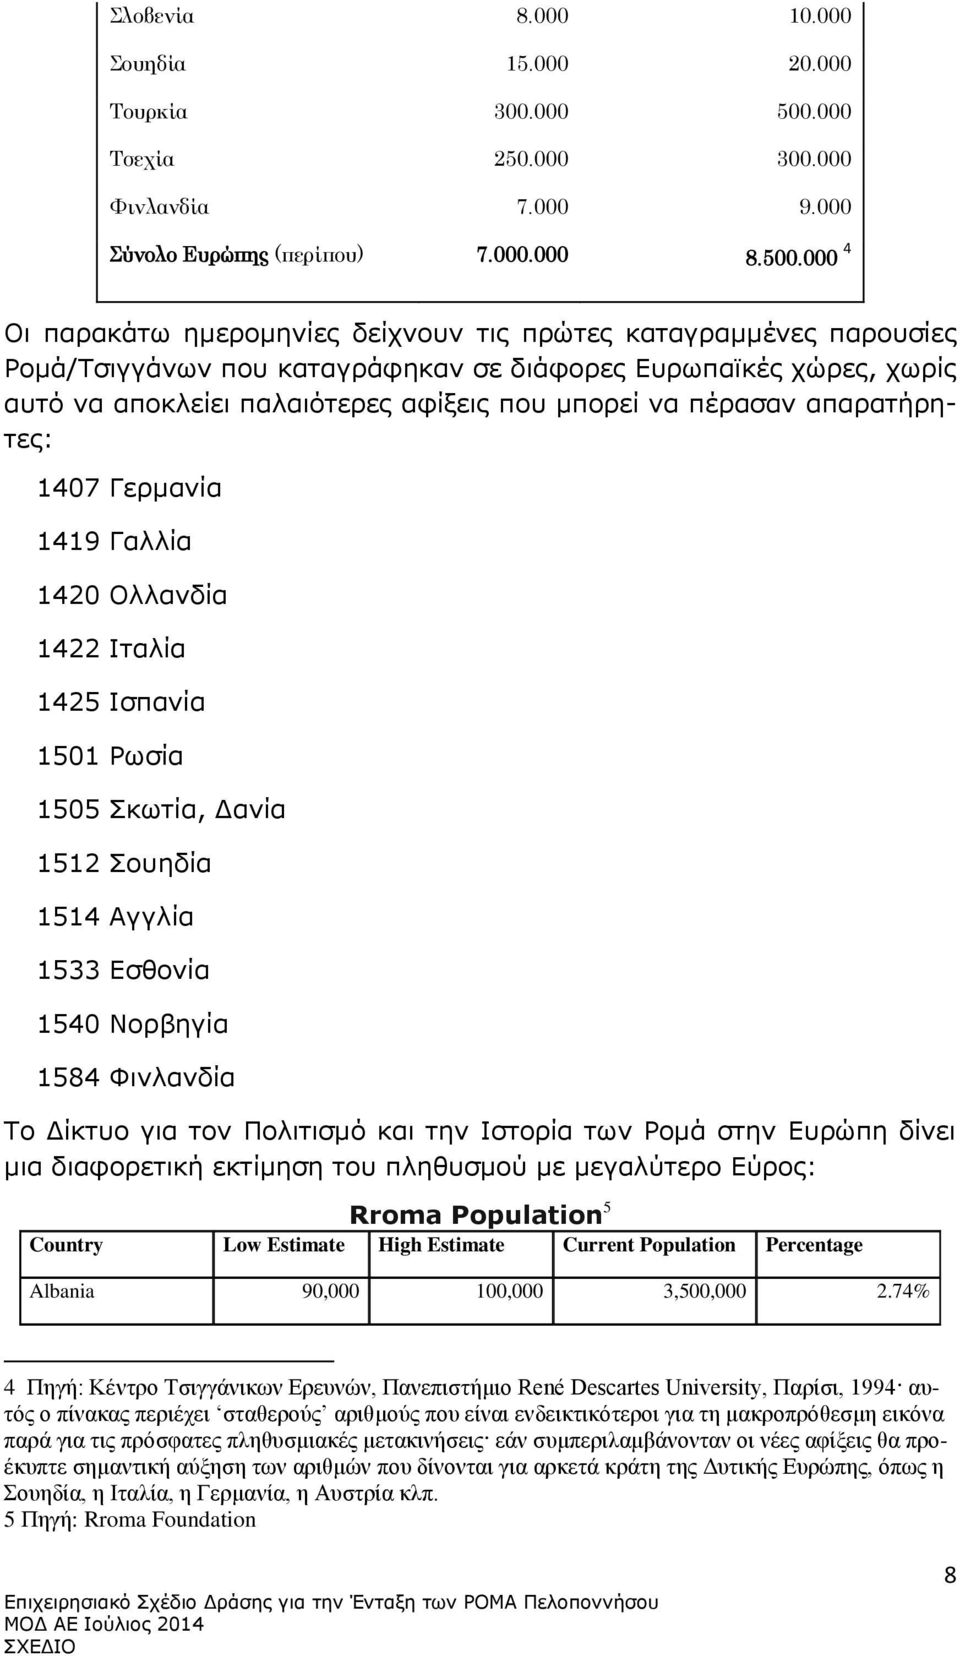 000 4 Οι παρακάτω ημερομηνίες δείχνουν τις πρώτες καταγραμμένες παρουσίες Ρομά/Τσιγγάνων που καταγράφηκαν σε διάφορες Ευρωπαϊκές χώρες, χωρίς αυτό να αποκλείει παλαιότερες αφίξεις που μπορεί να